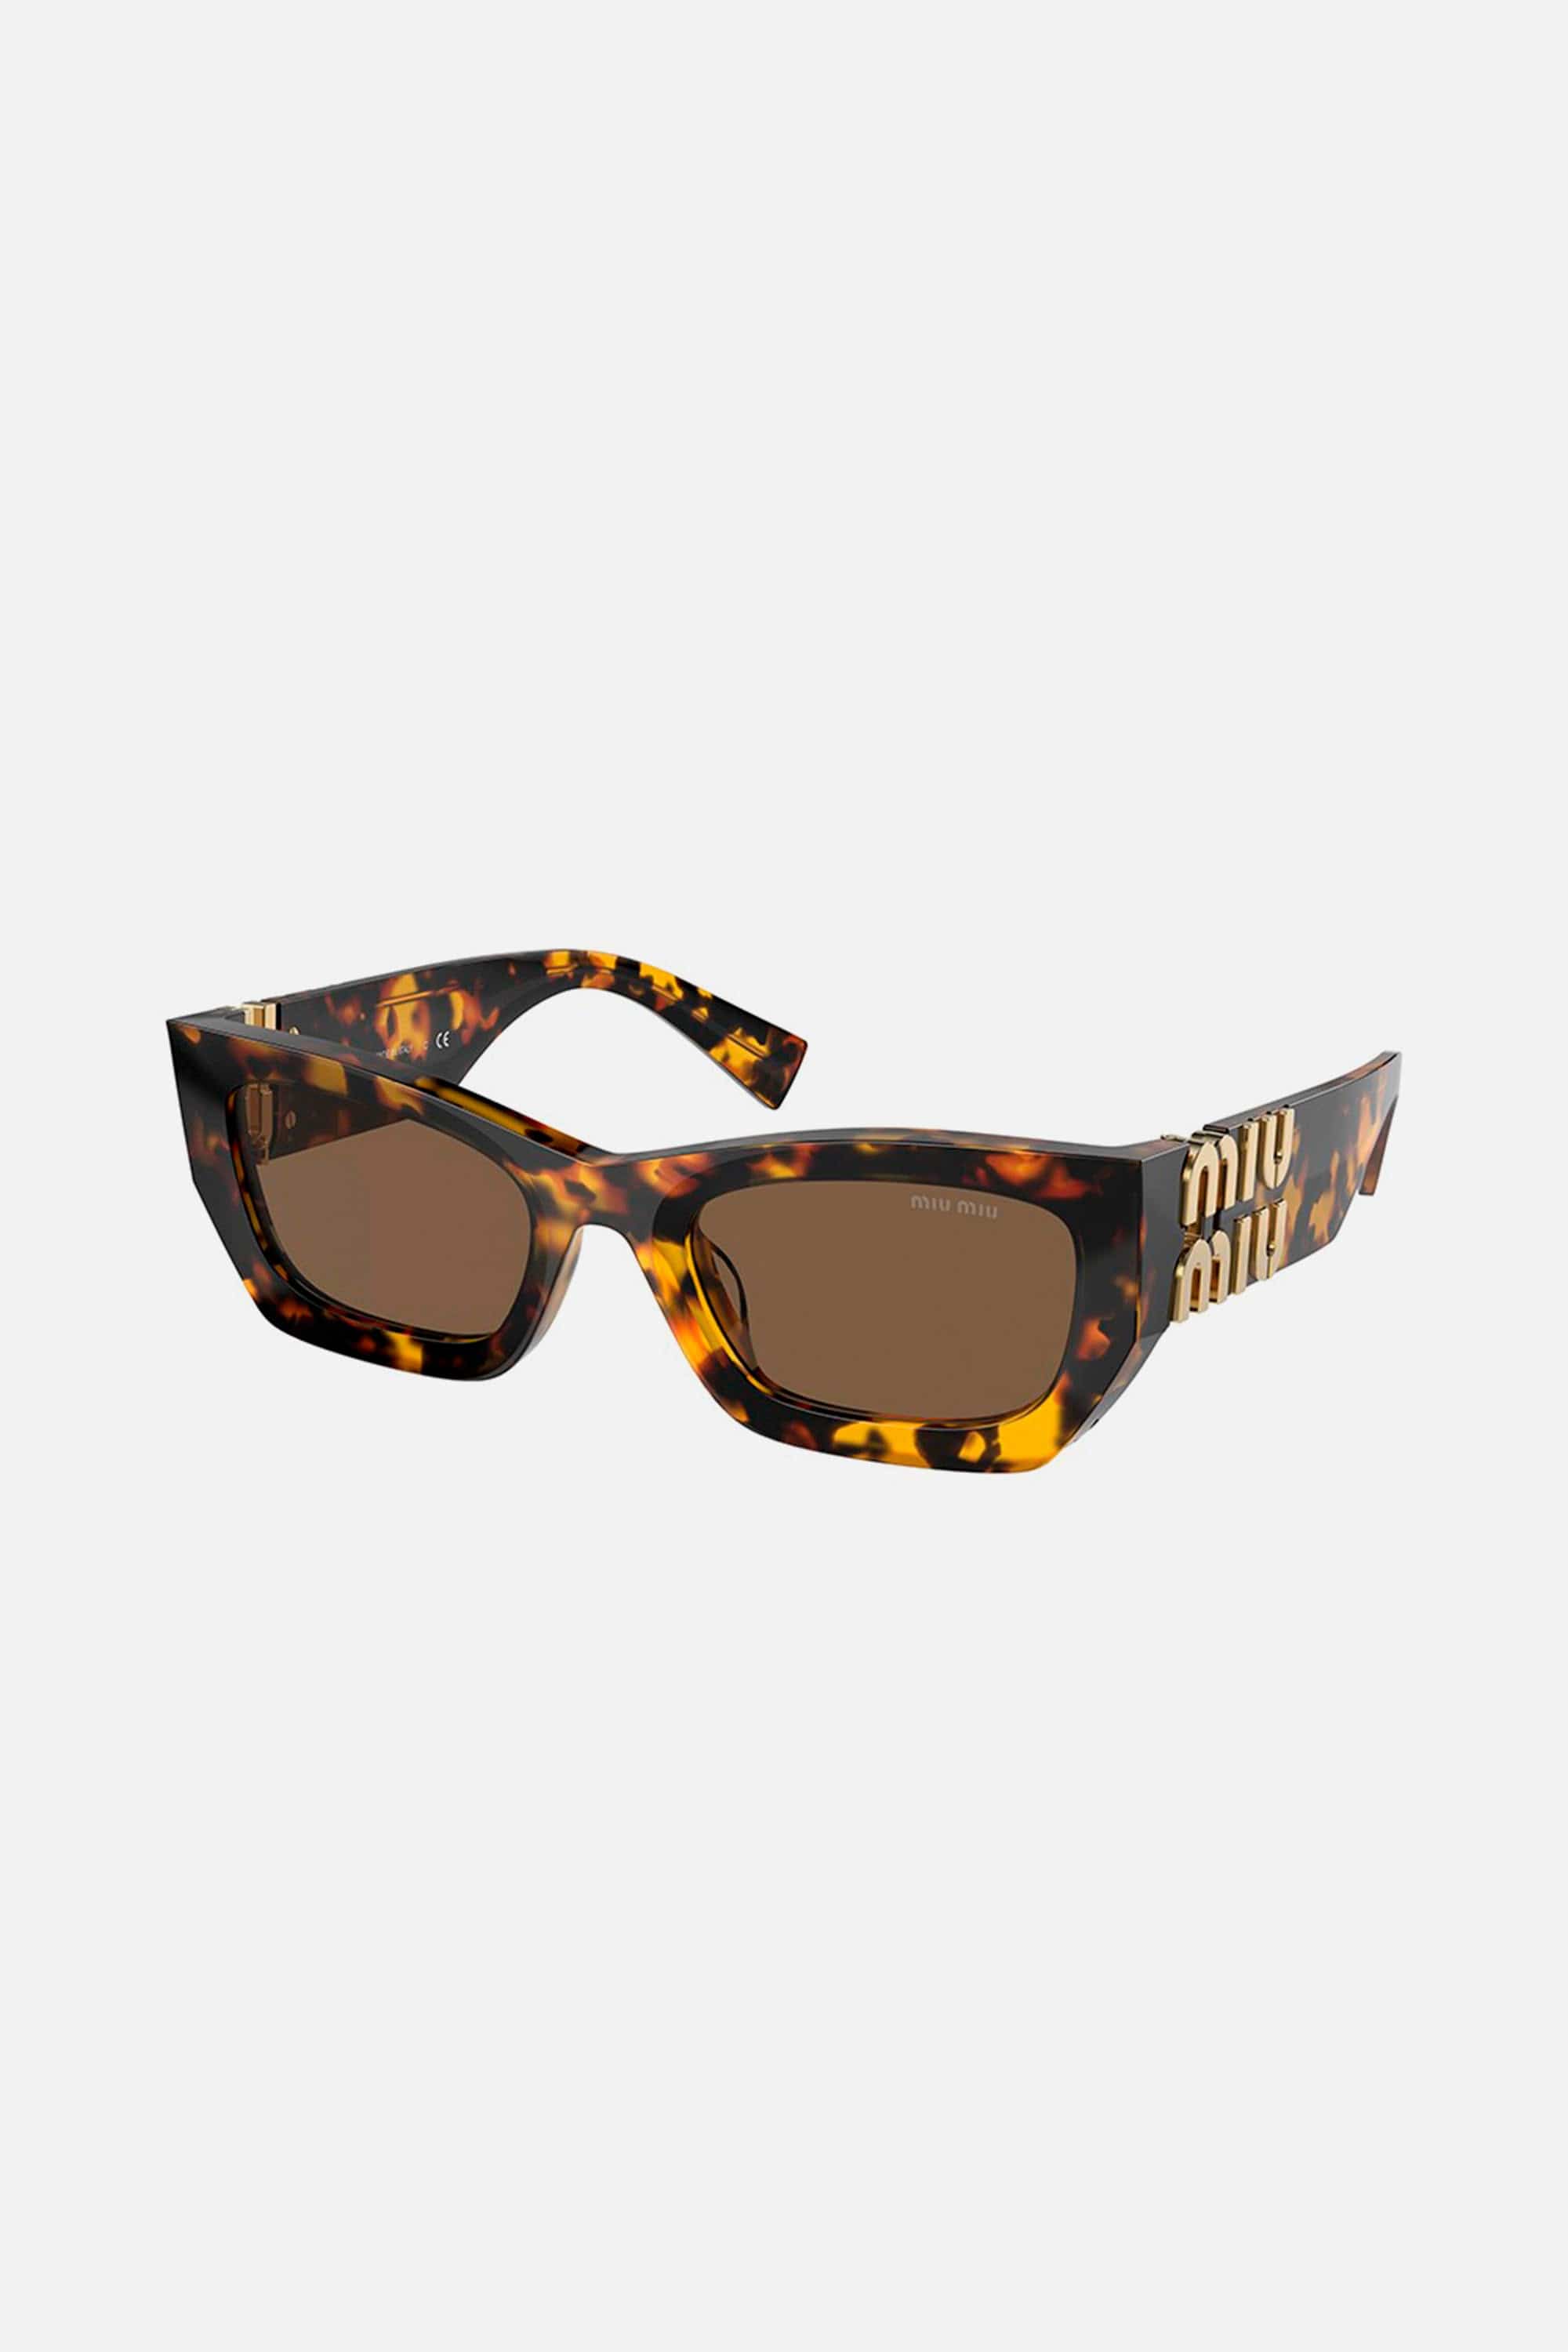 Miu Miu small cat-eye havana sunglasses - Eyewear Club